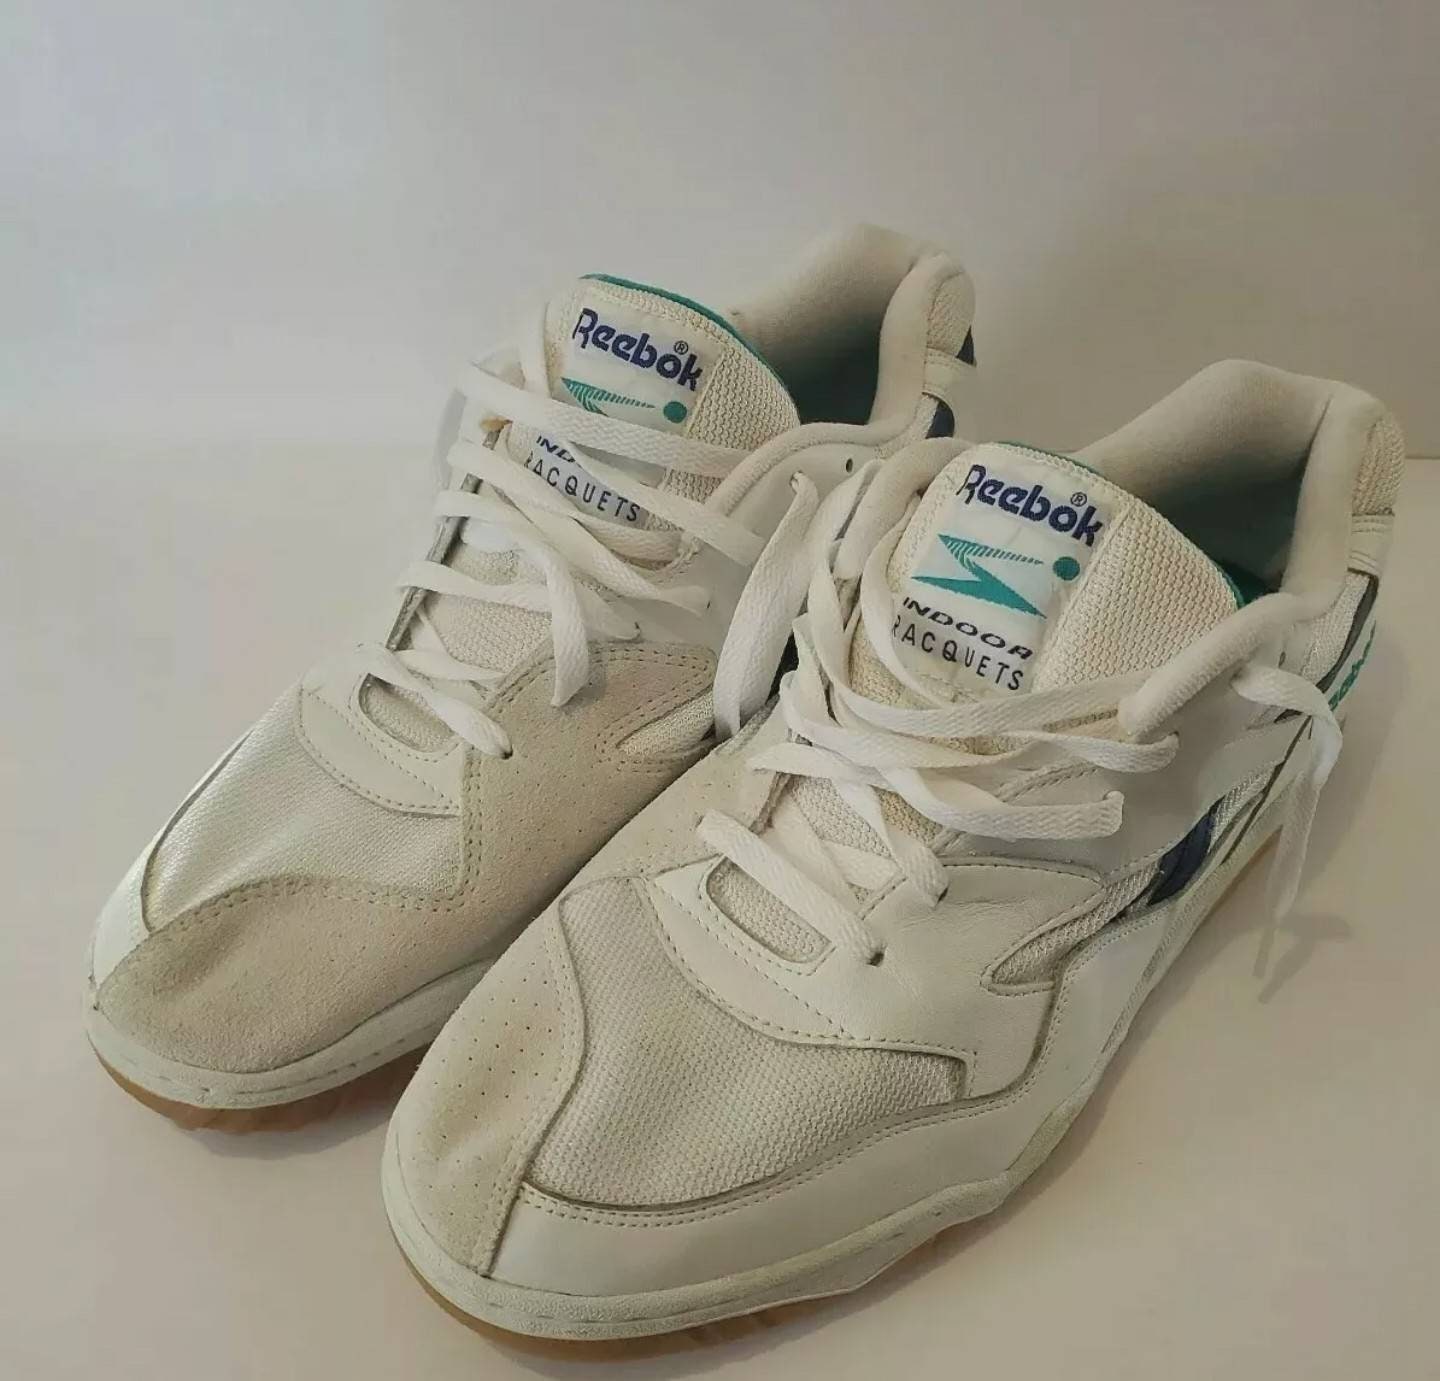 Espantar En marcha Camarada Reebok Vintage Shoes Basketball Tennis Indoor Racquets 80s 90s - Etsy